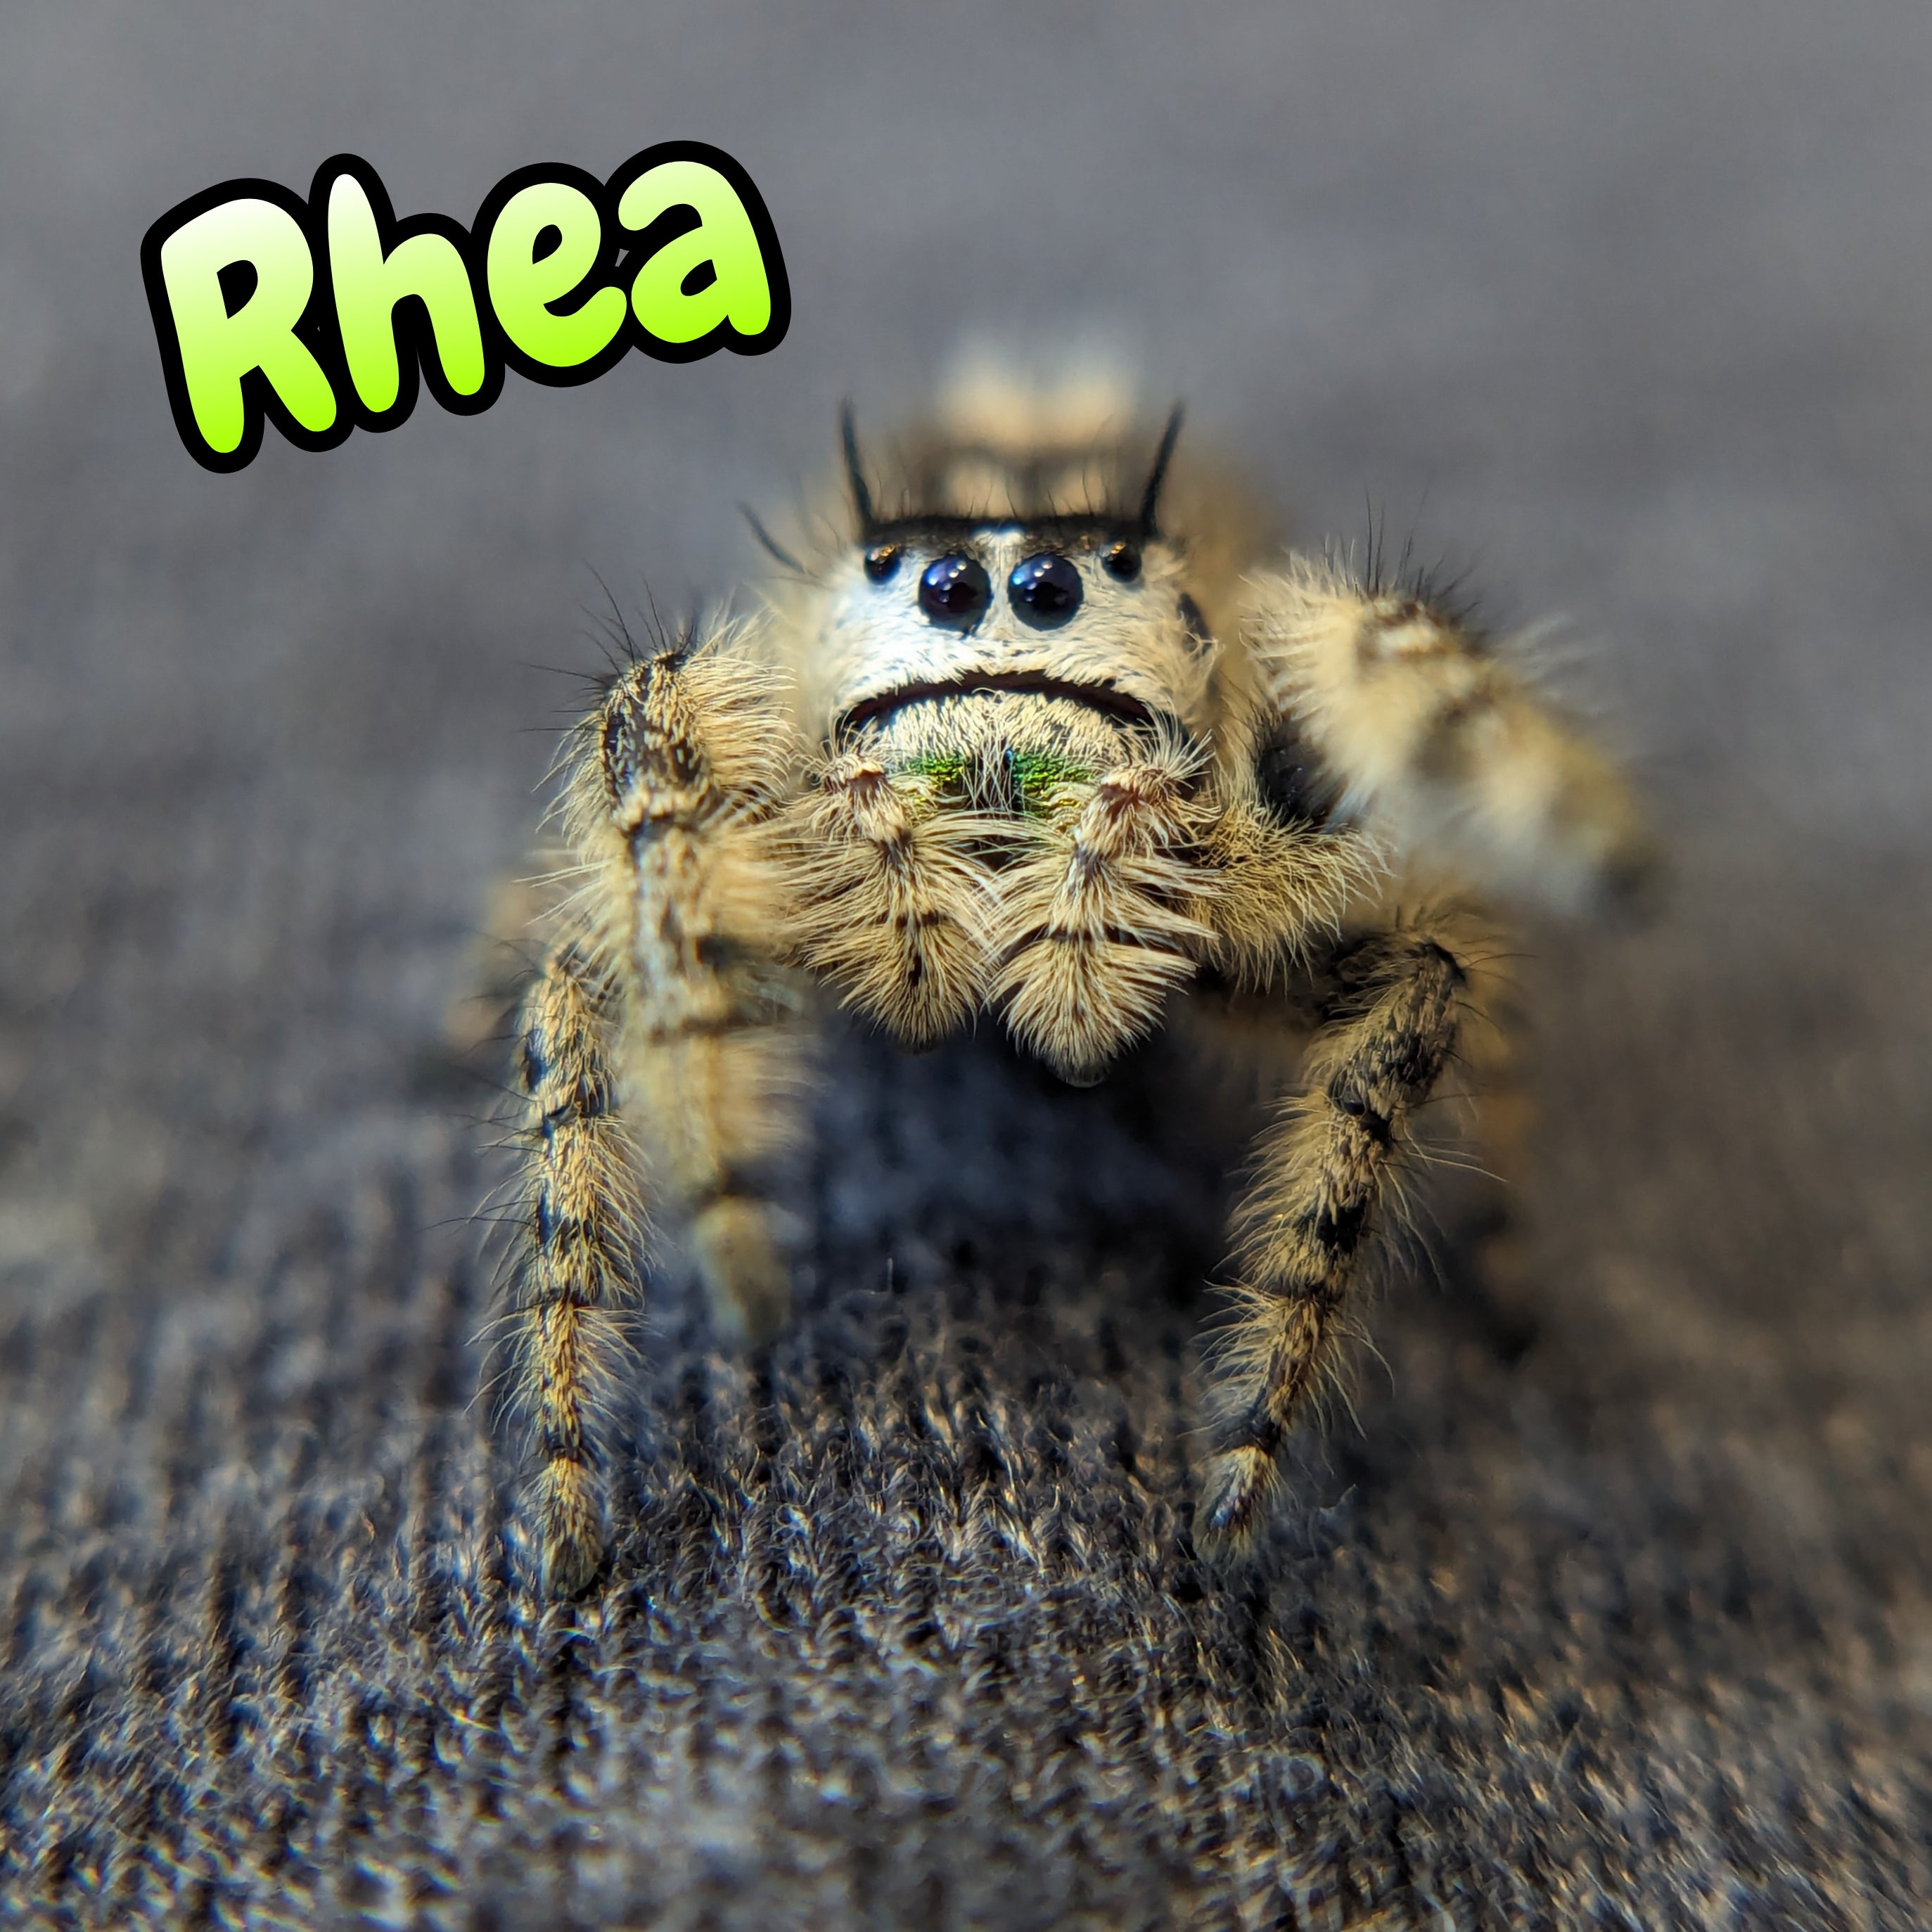 Otiosus Jumping Spider "Rhea" (High White)